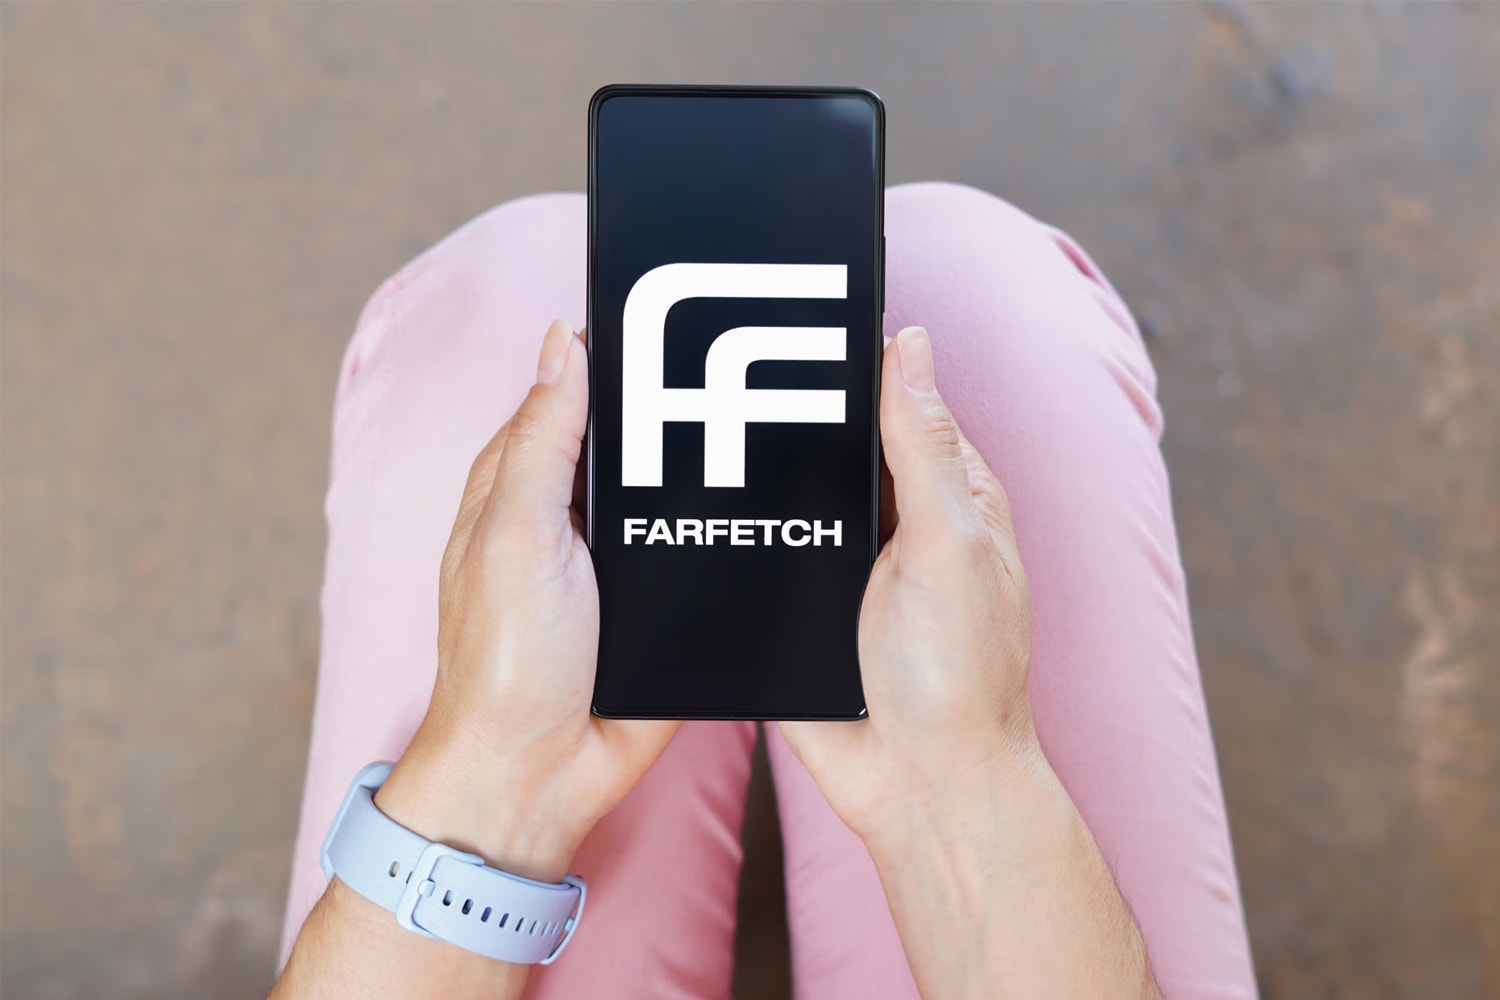 韓國企業 Coupang 將以 5 億美元收購電商巨頭 Farfetch